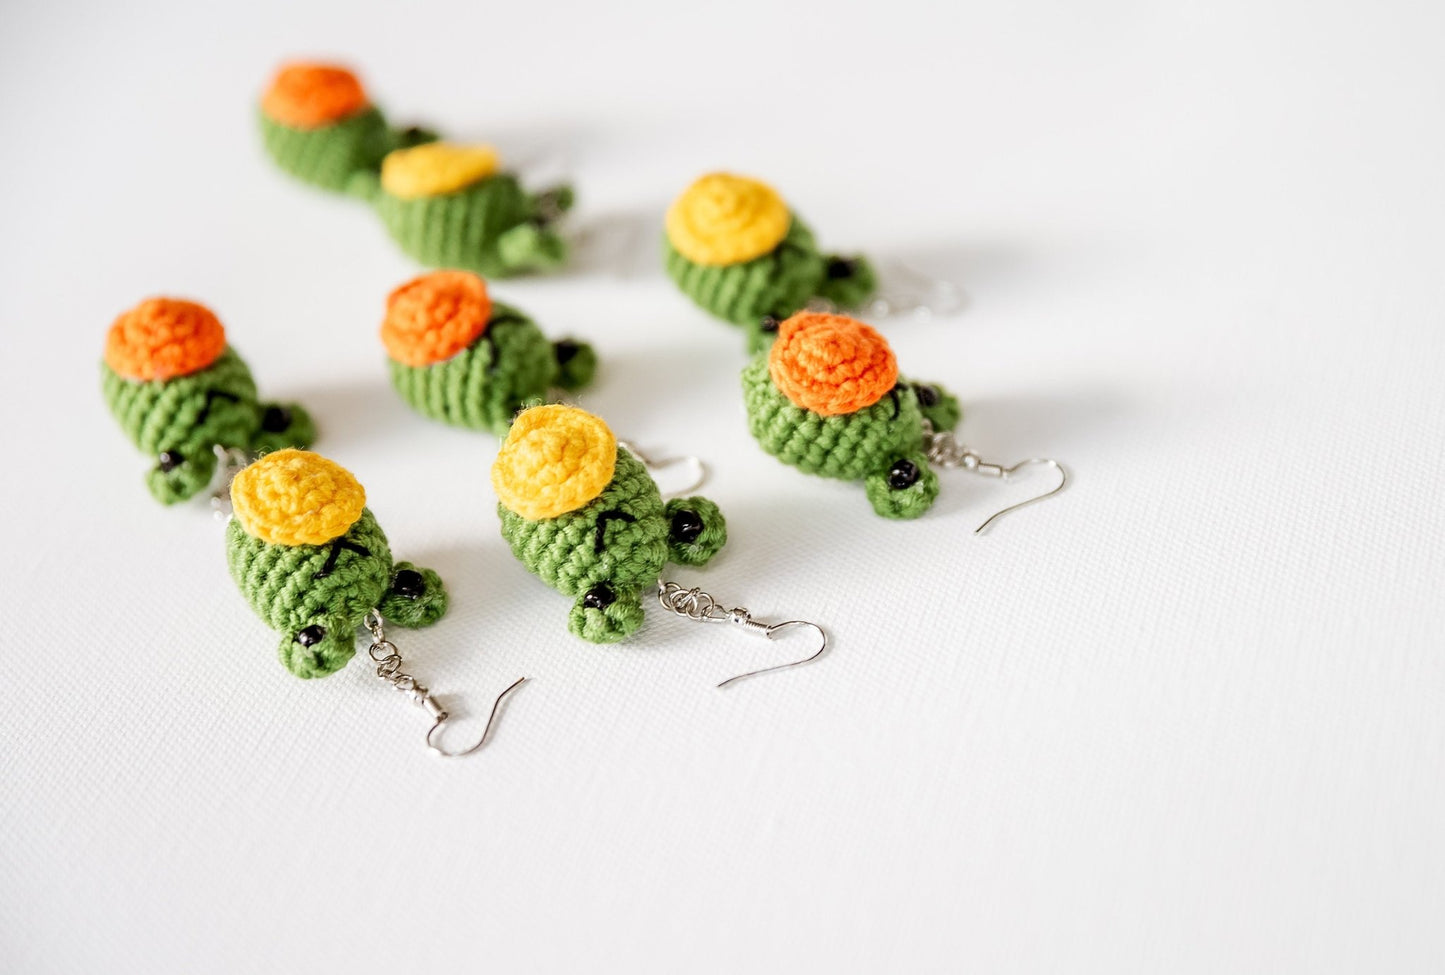 Frog Earrings Green Frog Earrings Crochet Earrings Crochet Frog Earrings Cute Frog Earrings Kawai Animal Jewelry Amigurumi Frog Earrings - Hemsin Atelier